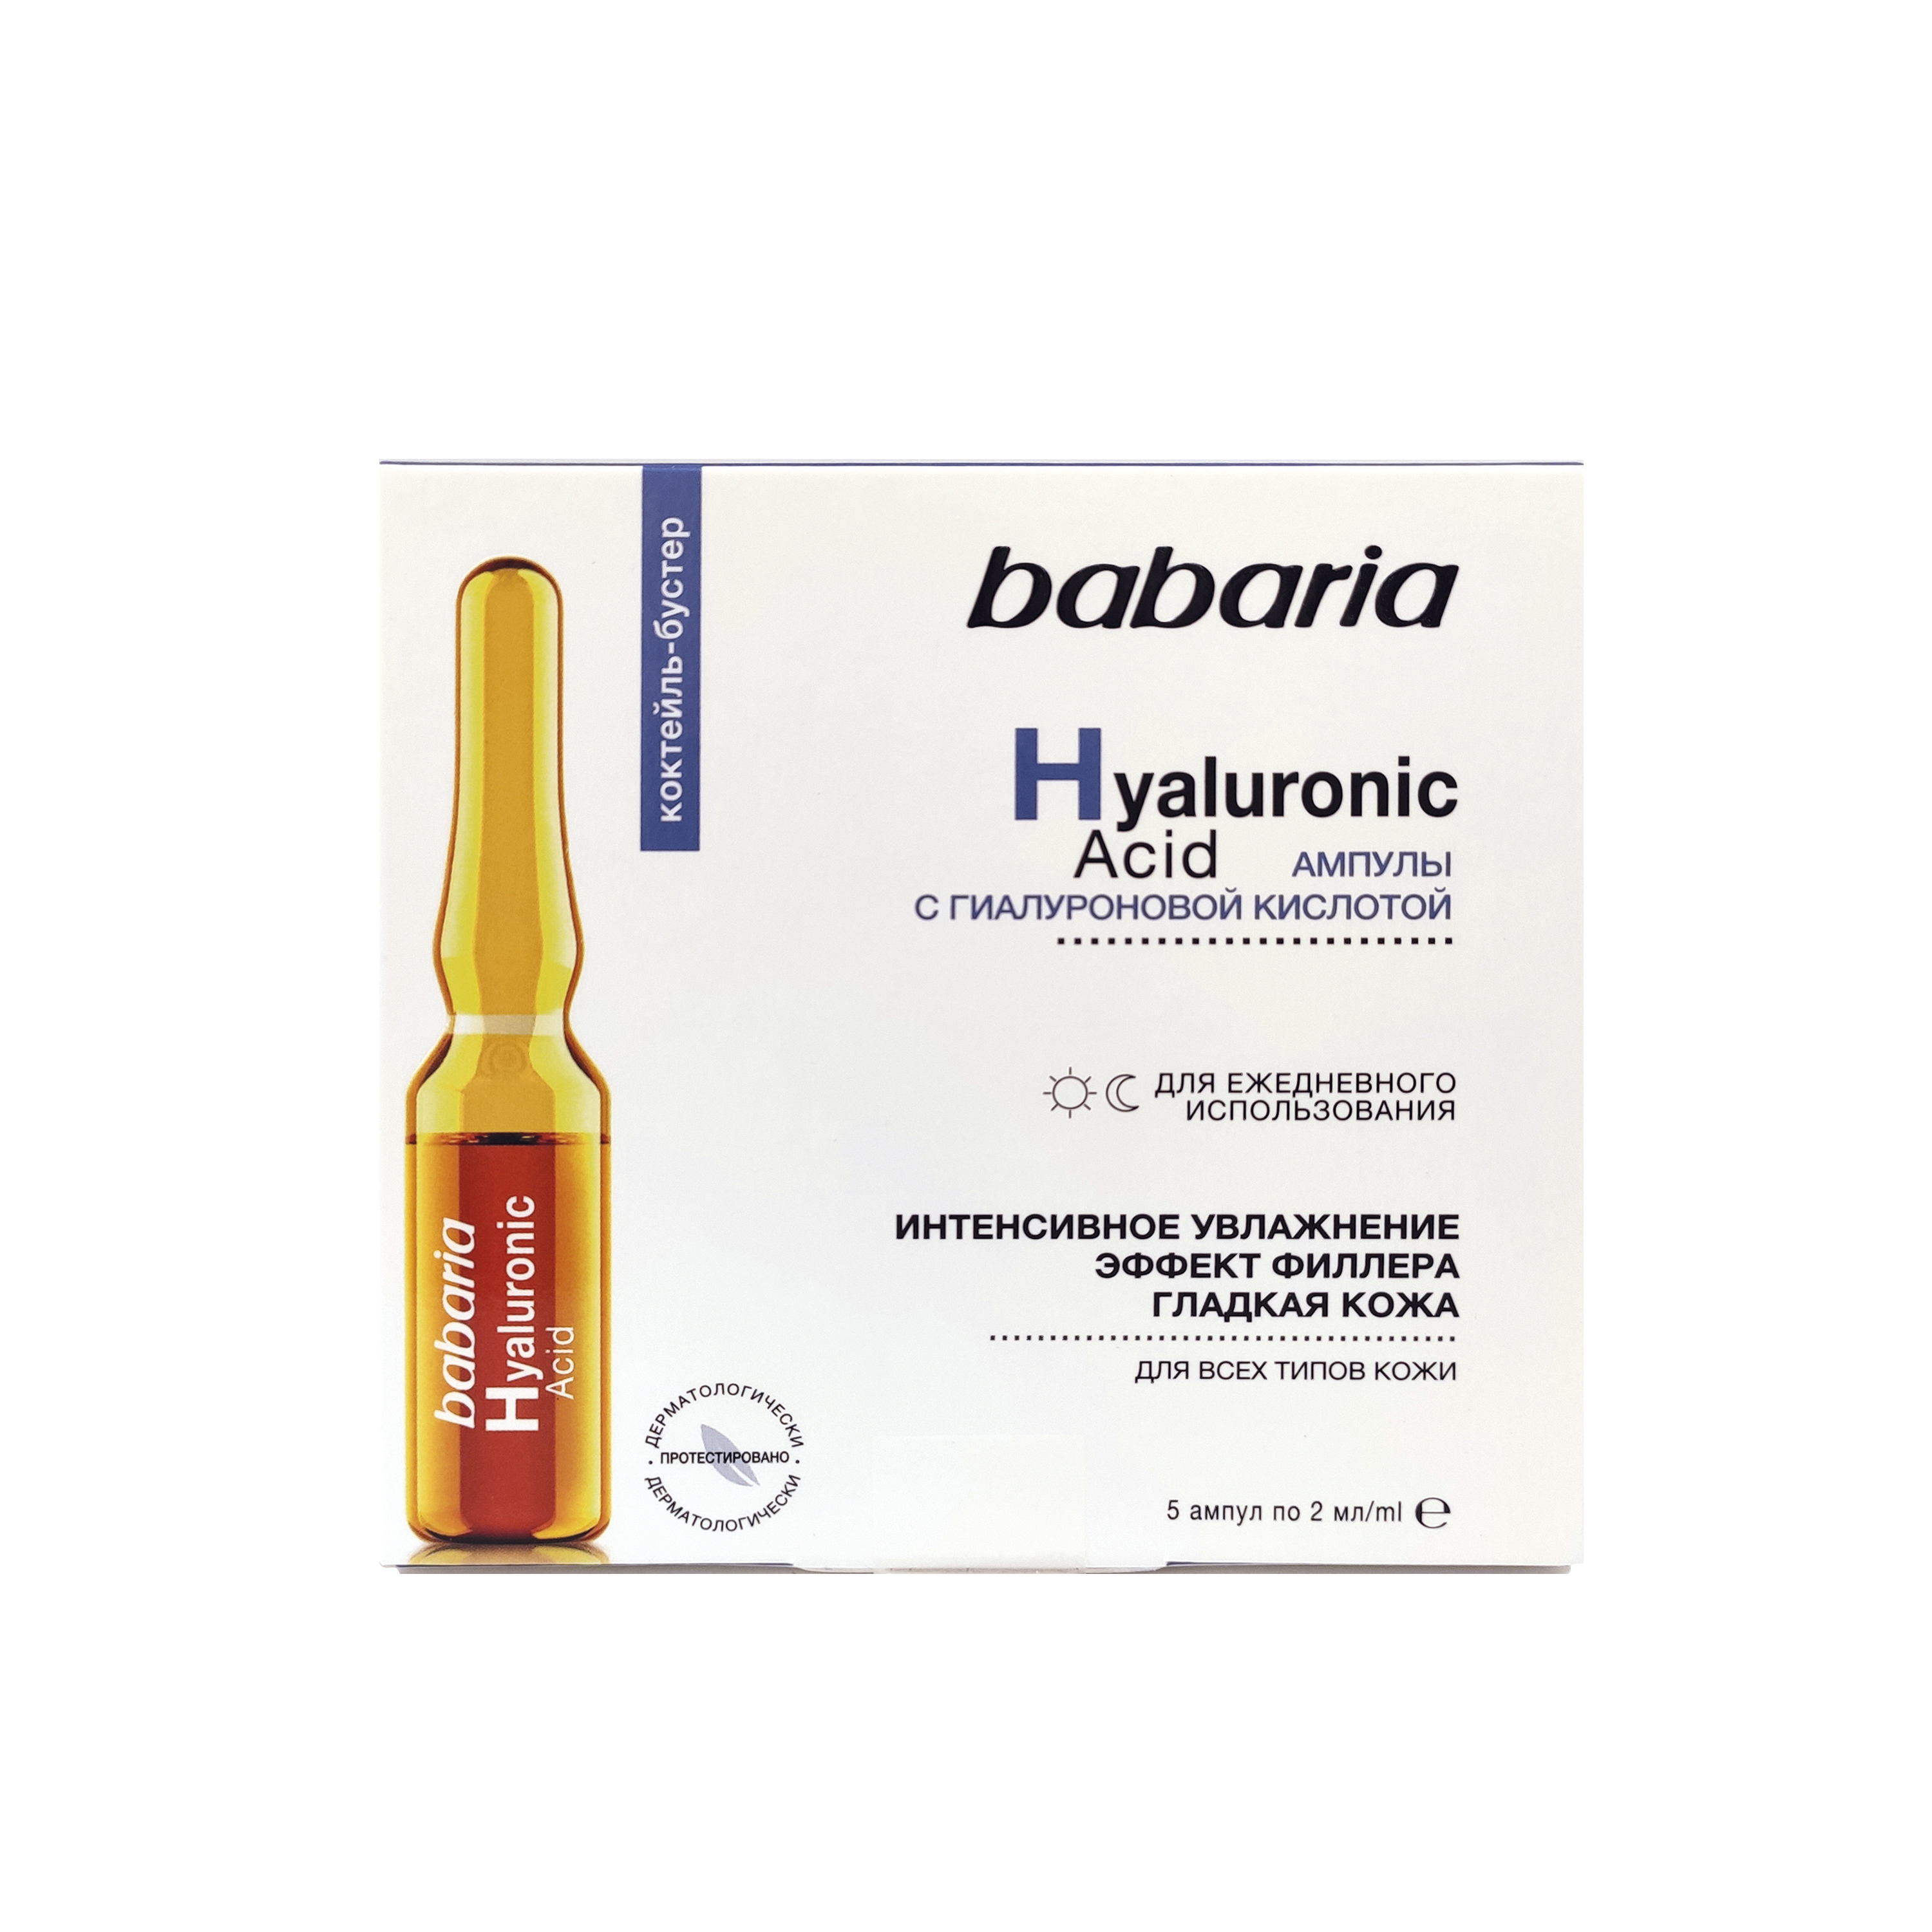 Сыворотка для лица Babaria интенсивное увлажнение, с гиалуроновой кислотой, 10 мл